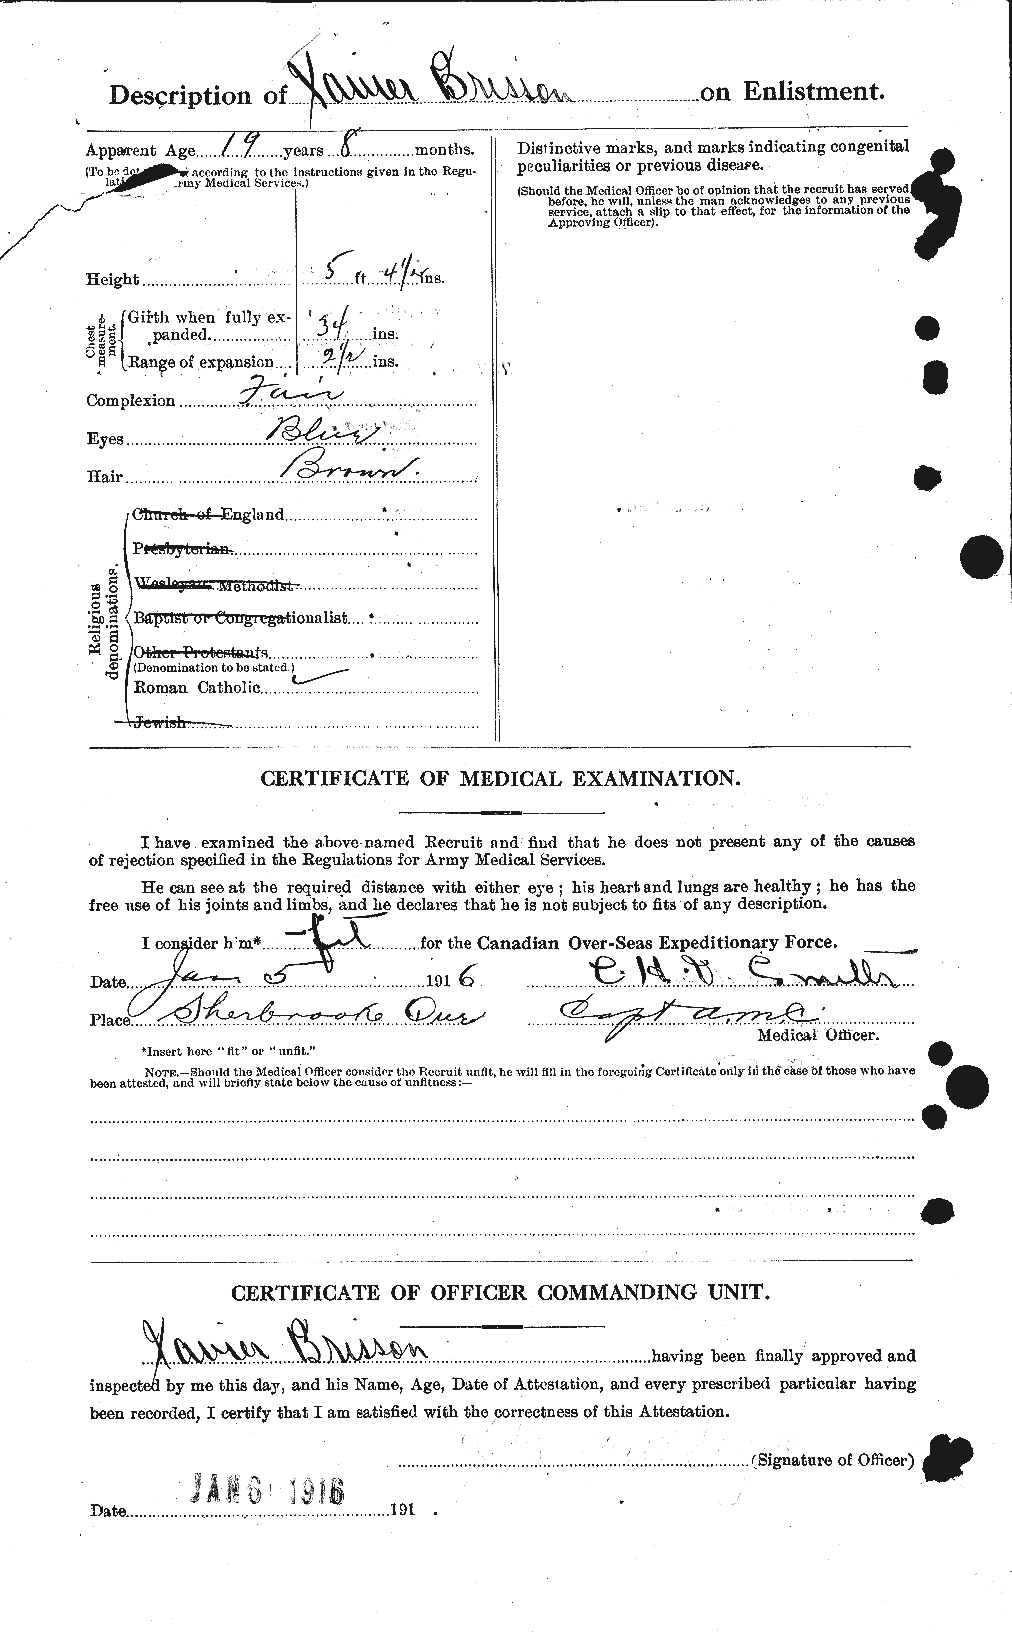 Dossiers du Personnel de la Première Guerre mondiale - CEC 260306b